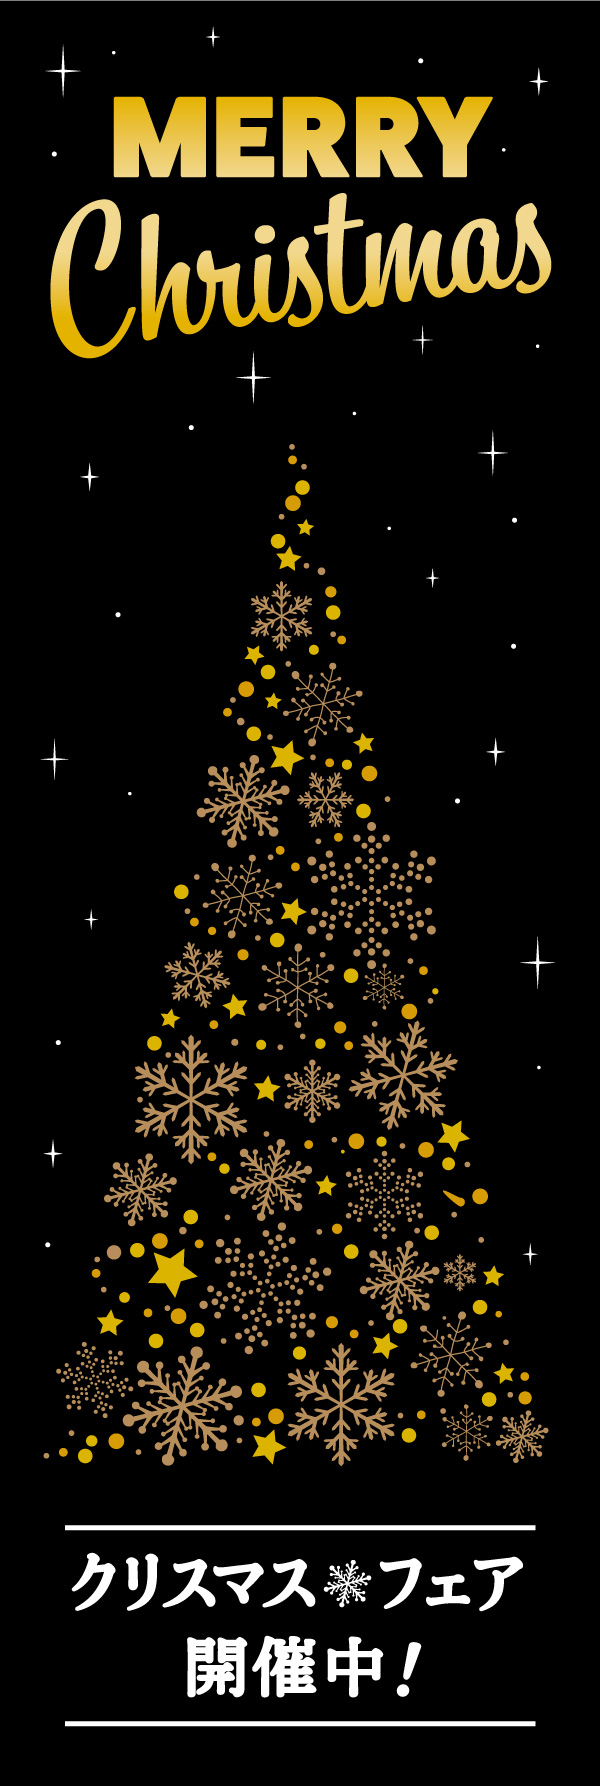 クリスマスフェア 14 「クリスマスフェア」の幟です。黒背景に金の飾りで、高級感のあるクリスマス幟に仕上げました。(Y.M)